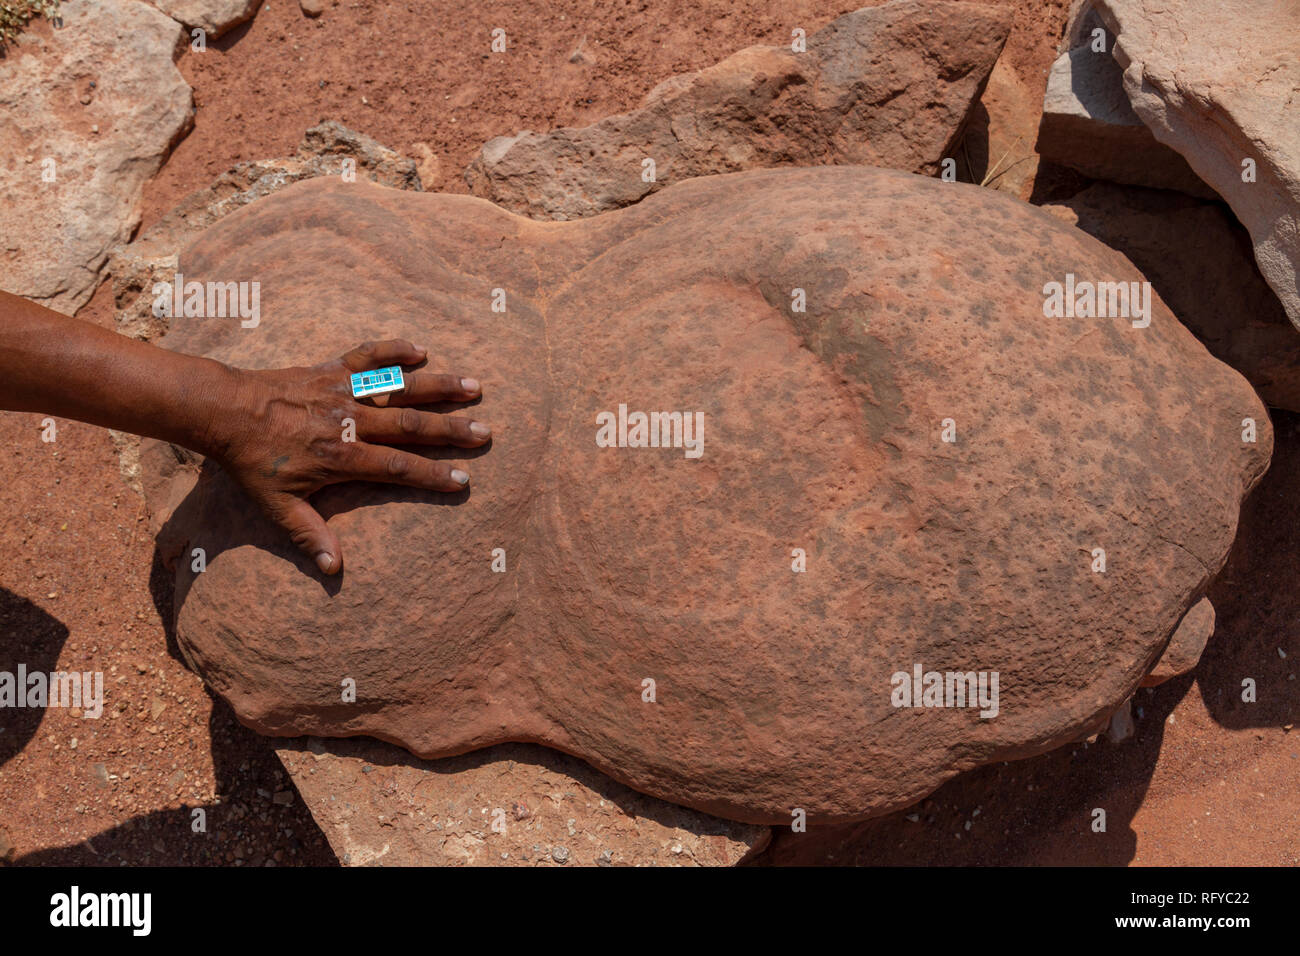 Geologische Konkretionen mit einem mans hand für Skala, Moenkopi Dinosaurierspuren in der Nähe von Tuba City, Arizona, United States. Stockfoto